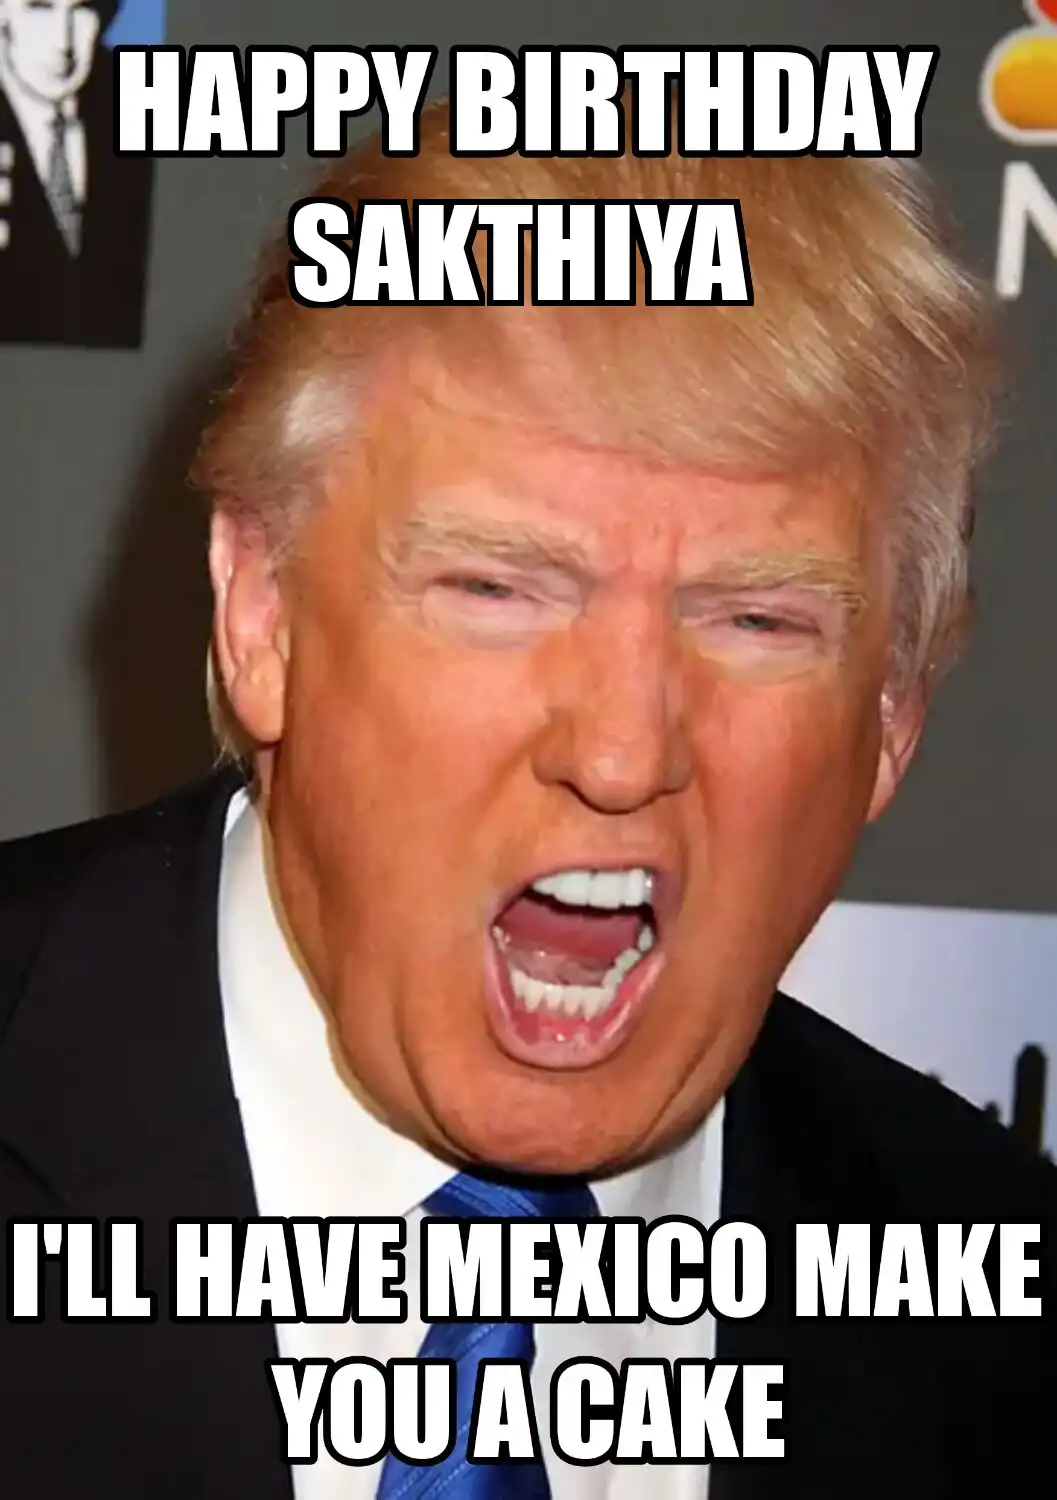 Happy Birthday Sakthiya Mexico Make You A Cake Meme